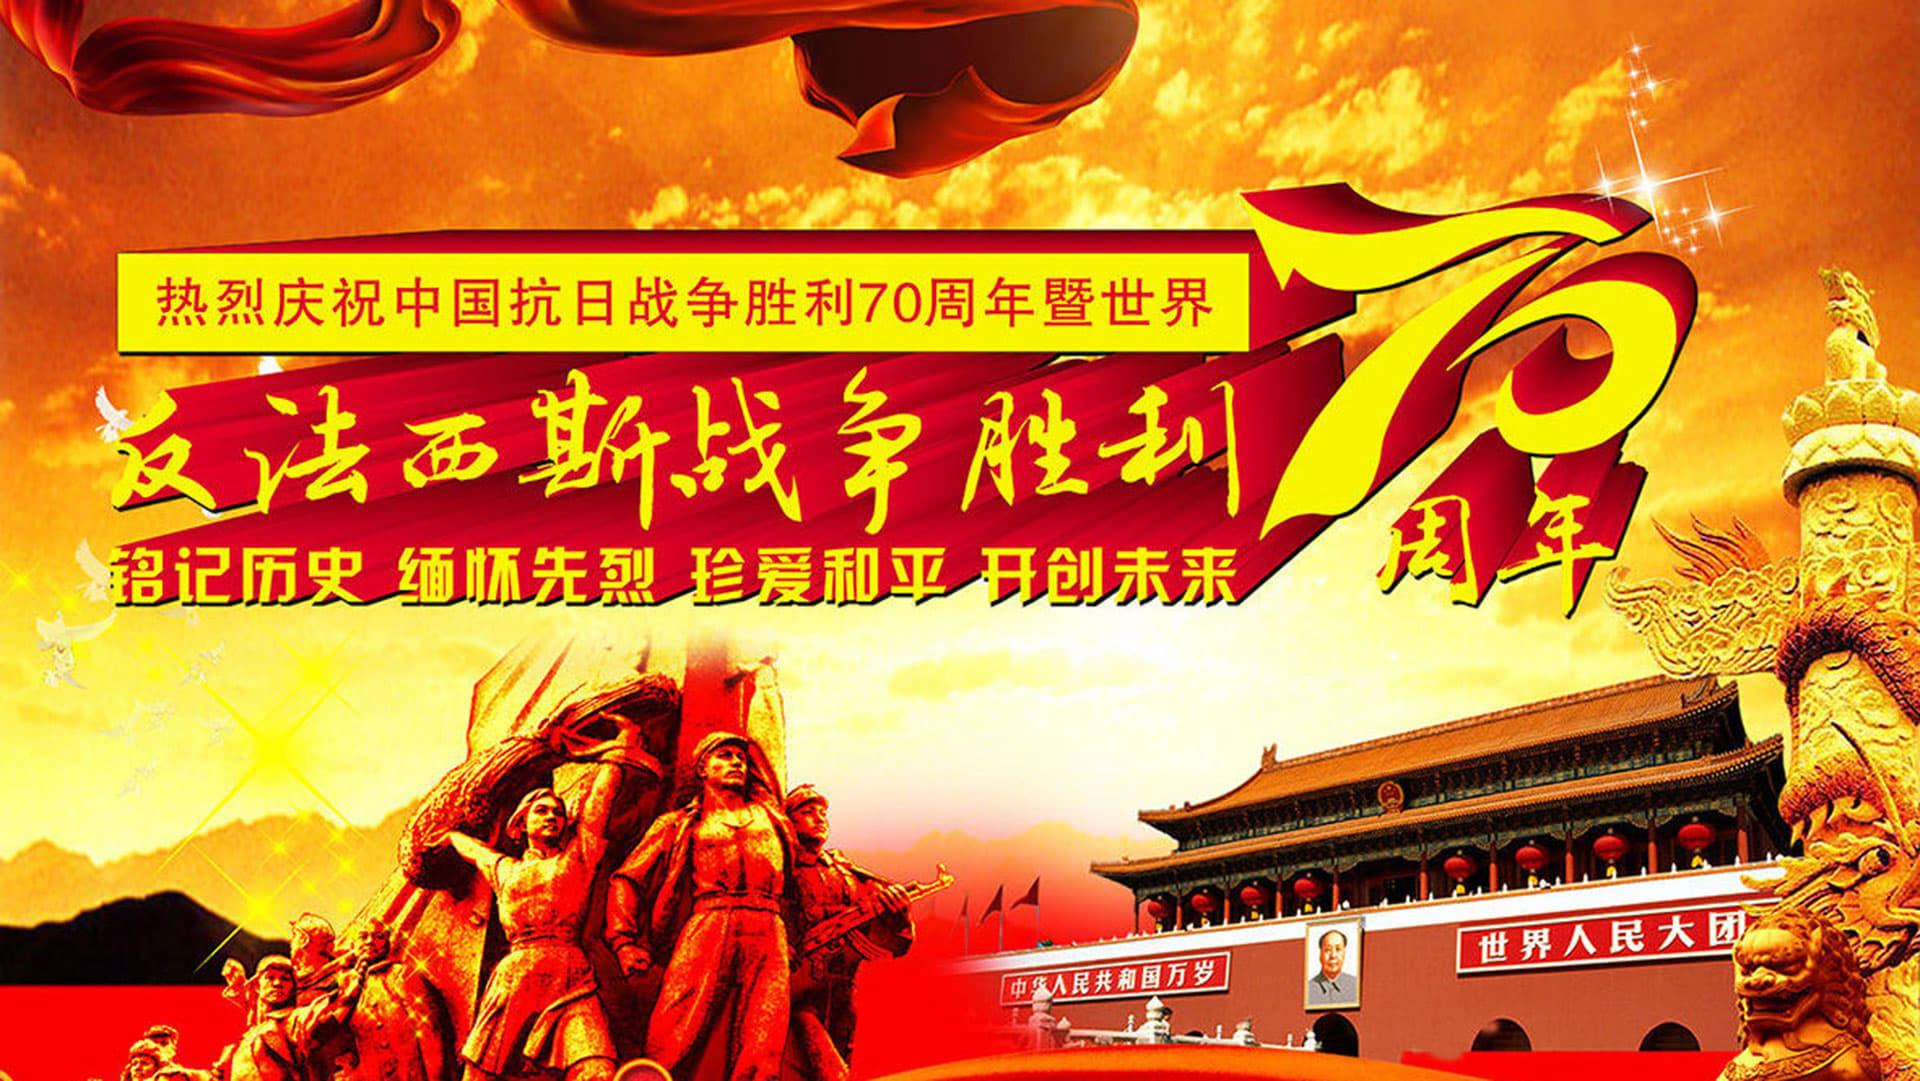 纪念中国人民抗日战争暨世界反法西斯战争胜利70周年阅兵式 backdrop